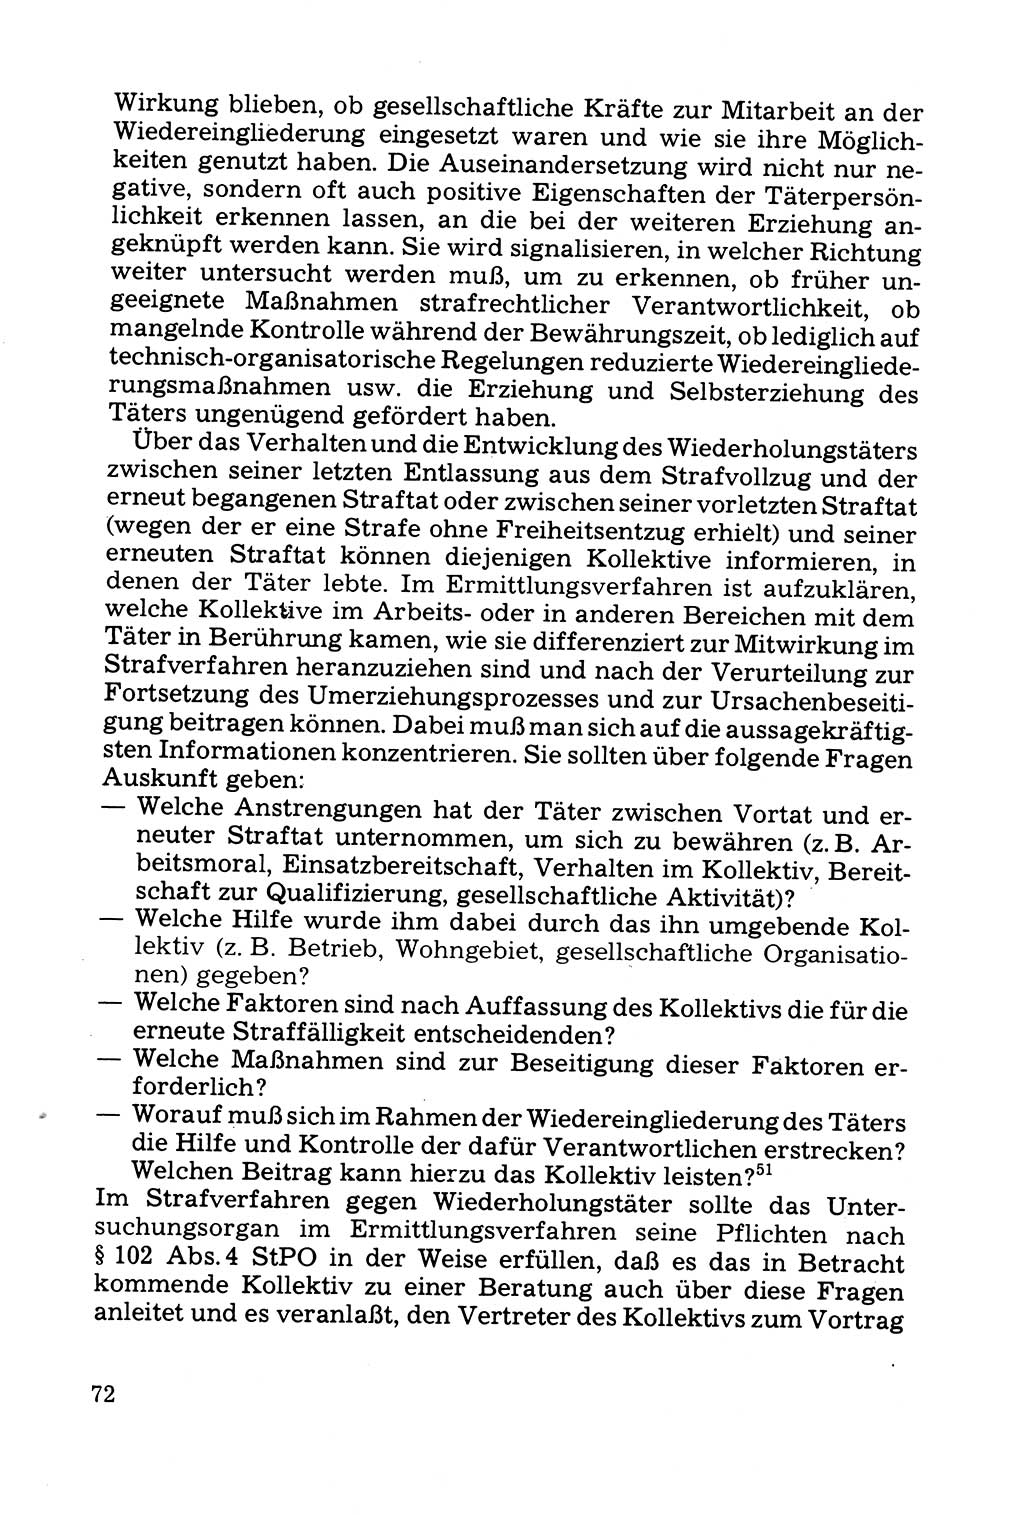 Grundfragen der Beweisführung im Ermittlungsverfahren [Deutsche Demokratische Republik (DDR)] 1980, Seite 72 (Bws.-Fhrg. EV DDR 1980, S. 72)